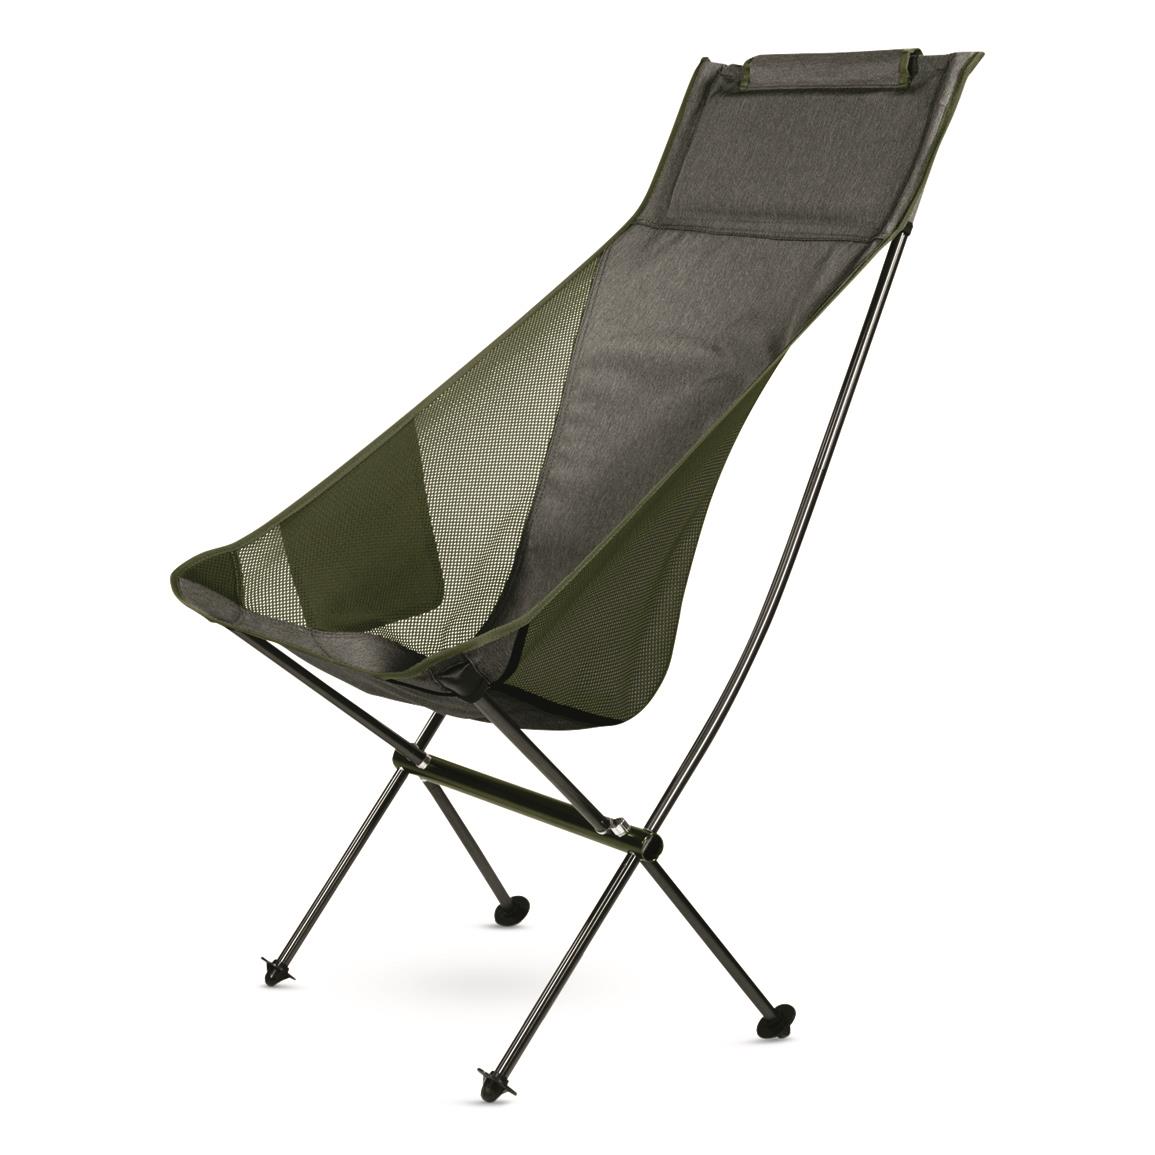 Klymit Ridgeline Camp Chair, Gray